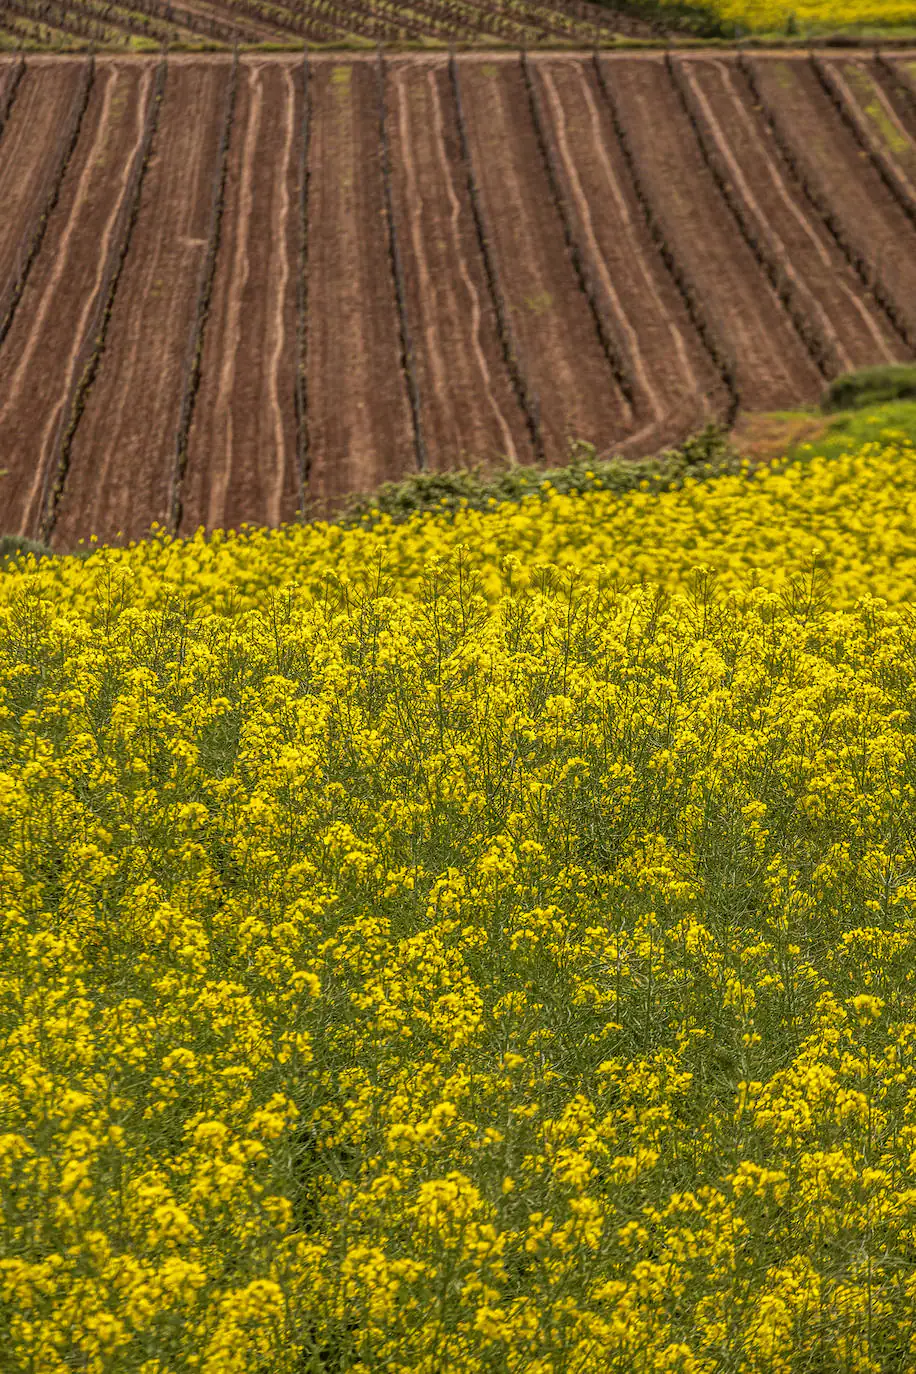 Fotos: Los cultivos de colza tiñen de amarillo el paisaje riojano